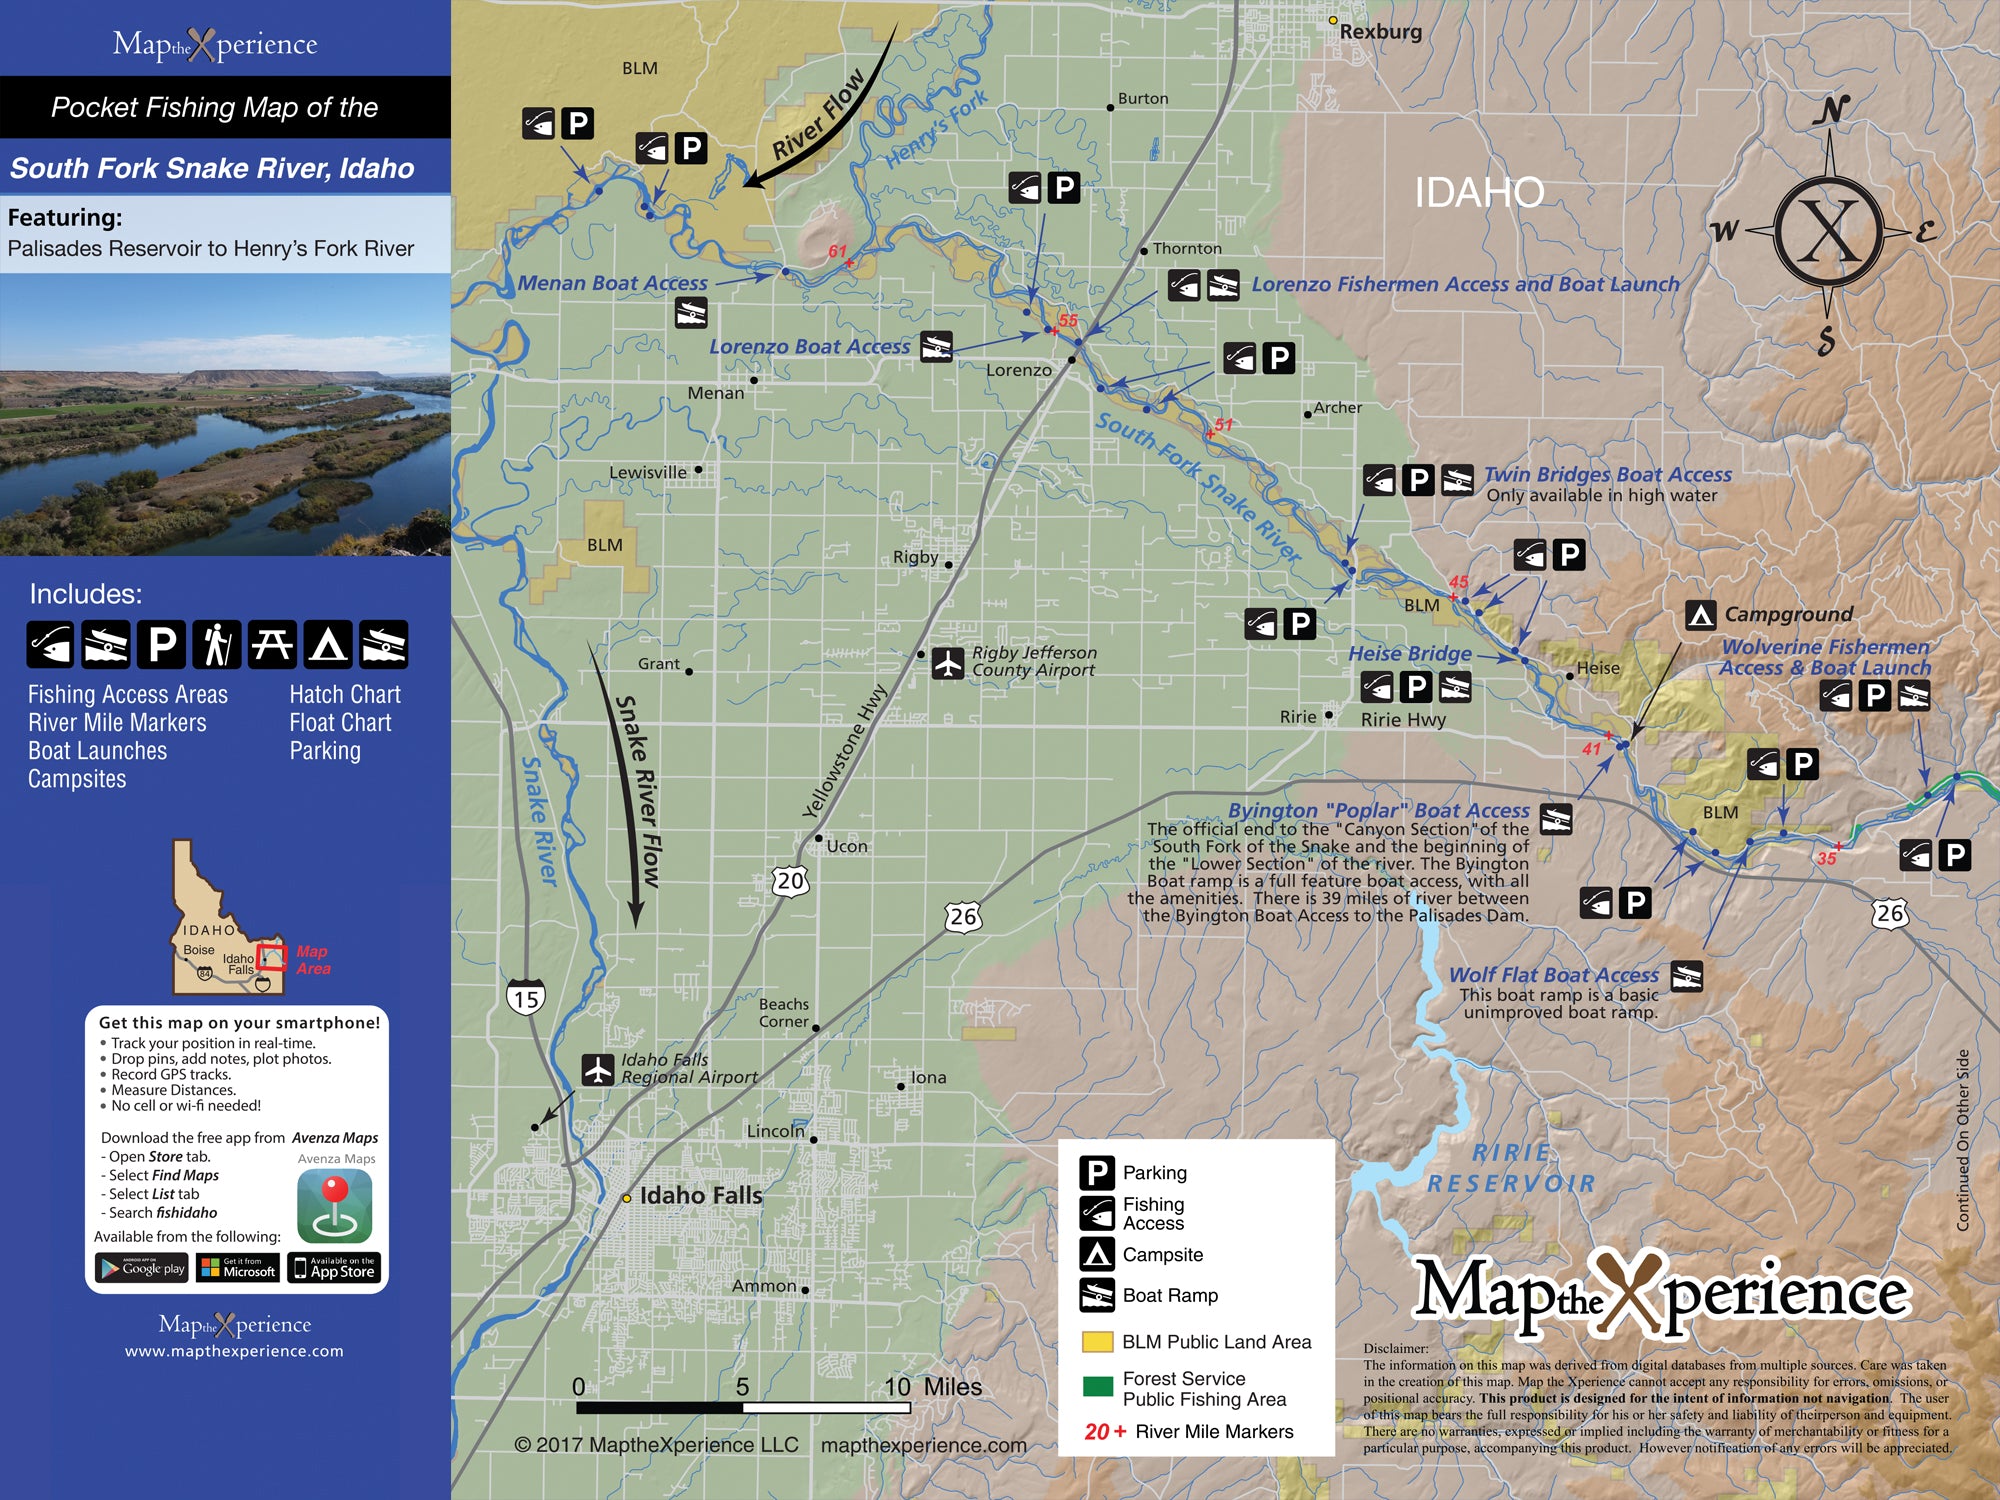 South Fork Snake River, Idaho Pocket Fishing Map